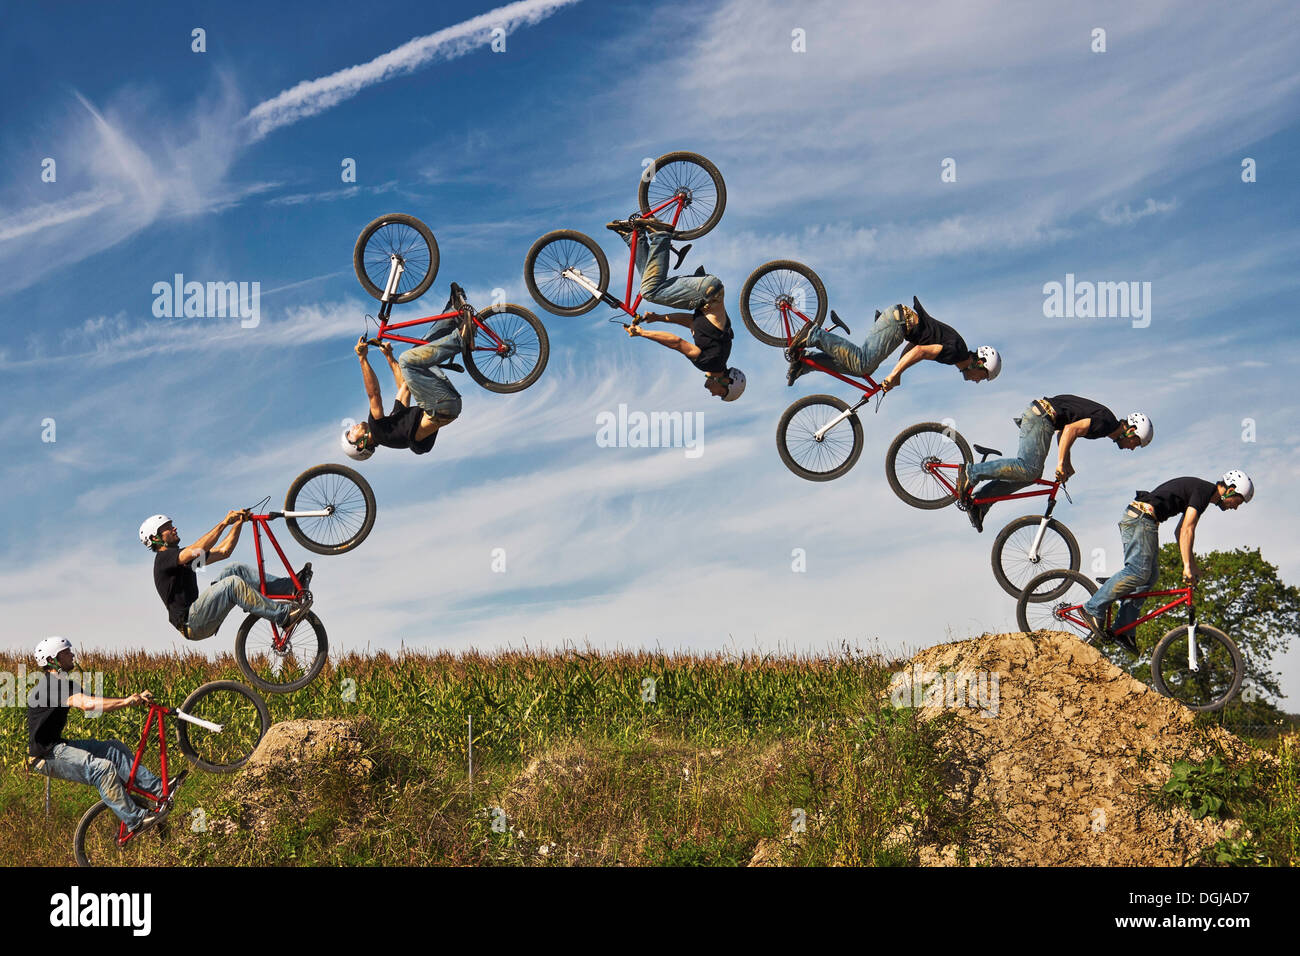 Mann durchführen Stunt auf bmx-Rad, digital composite Stockfoto